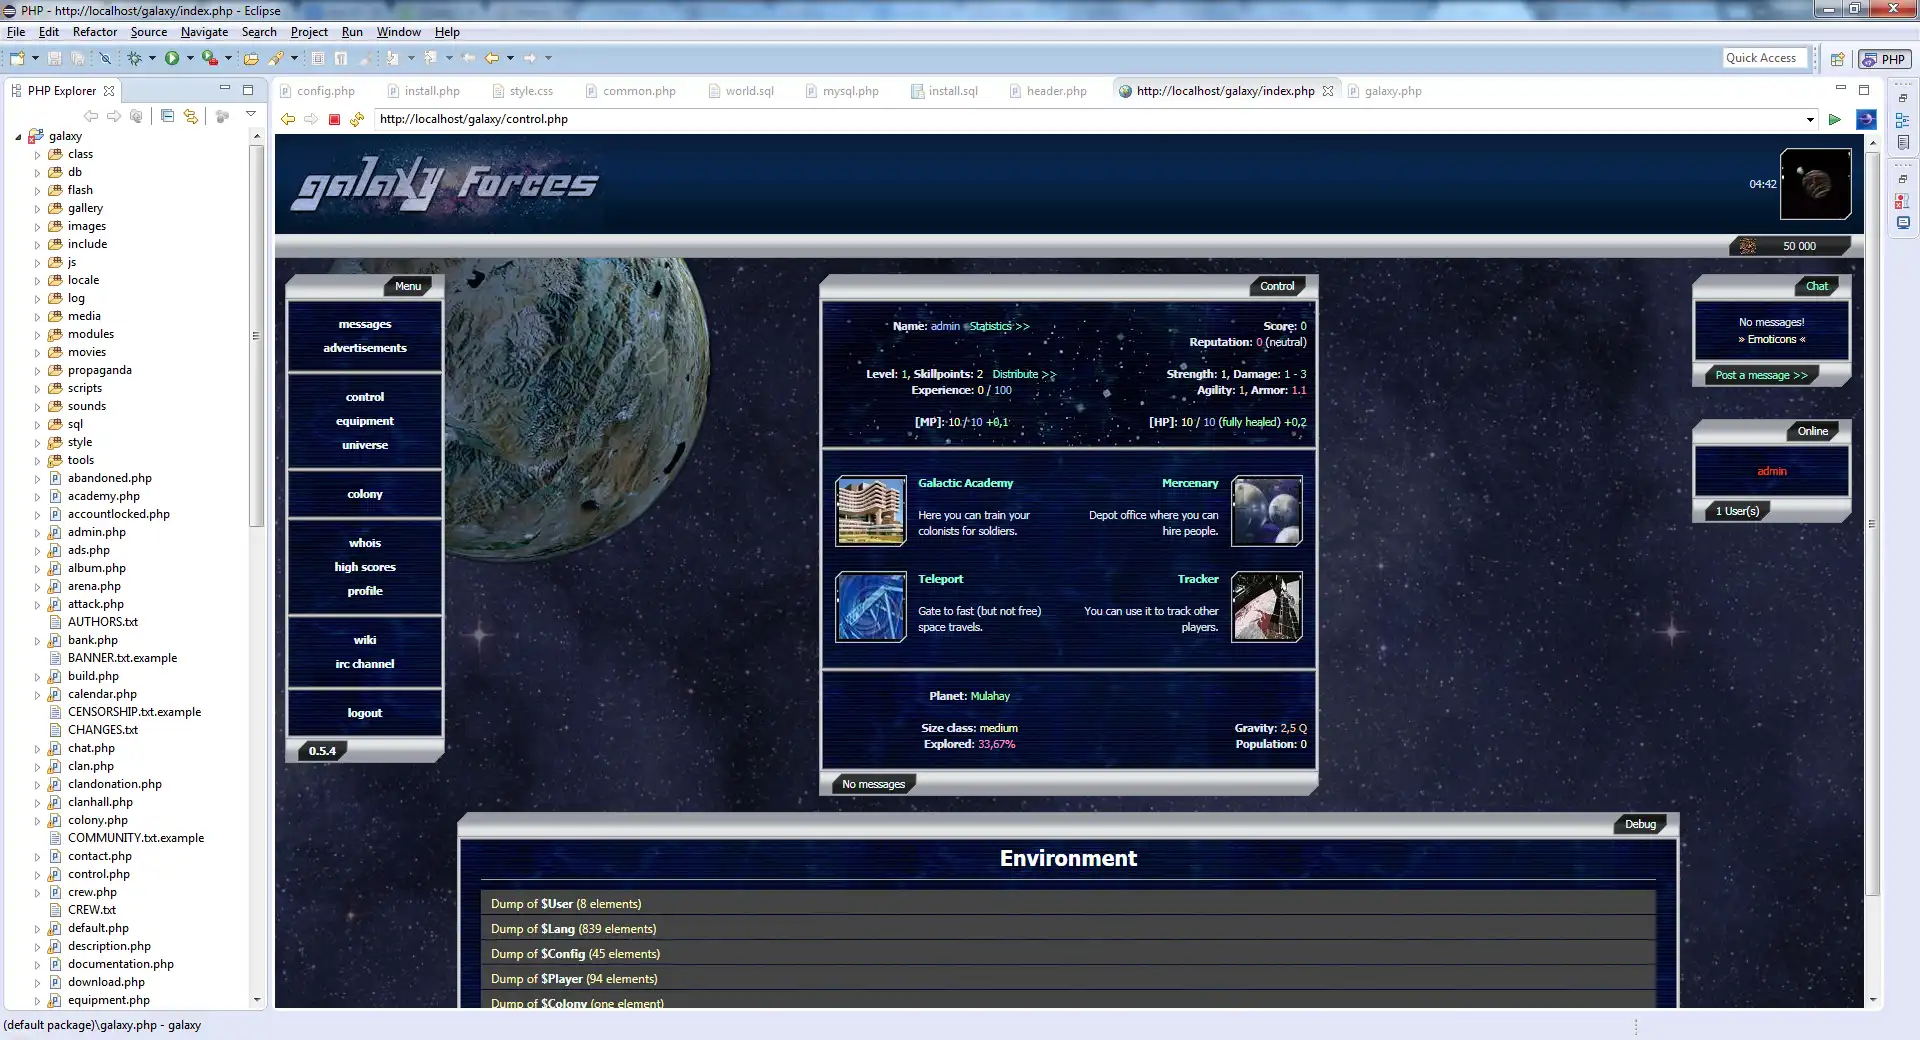 Web aracını veya web uygulamasını indirin Galaxy Forces MMORPG, Linux'ta çevrimiçi olarak çalıştırmak için